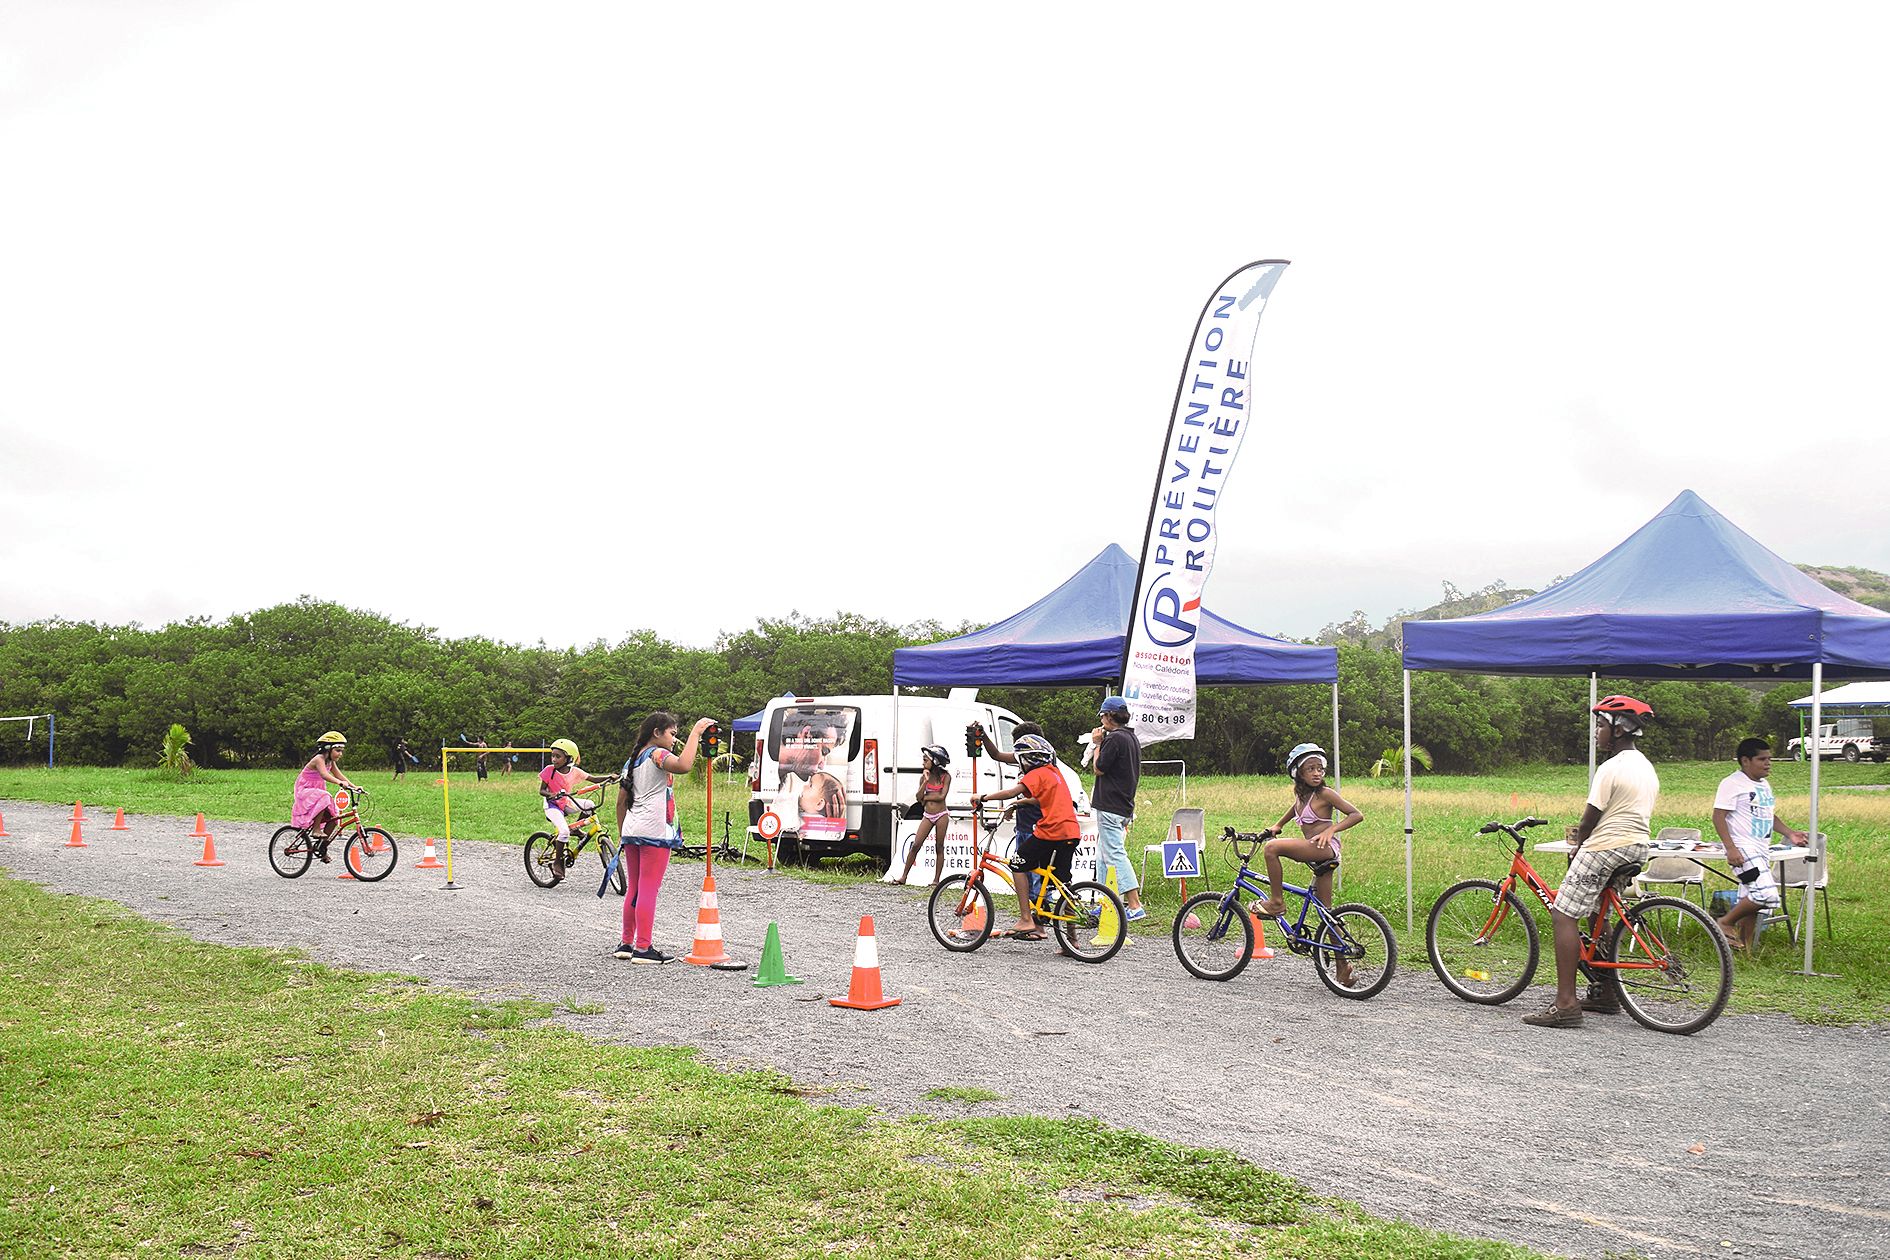 Des activités ludiques et instructives comme cet atelier de prévention à la sécurité  routière, exercices à l’appui pour les cyclistes.